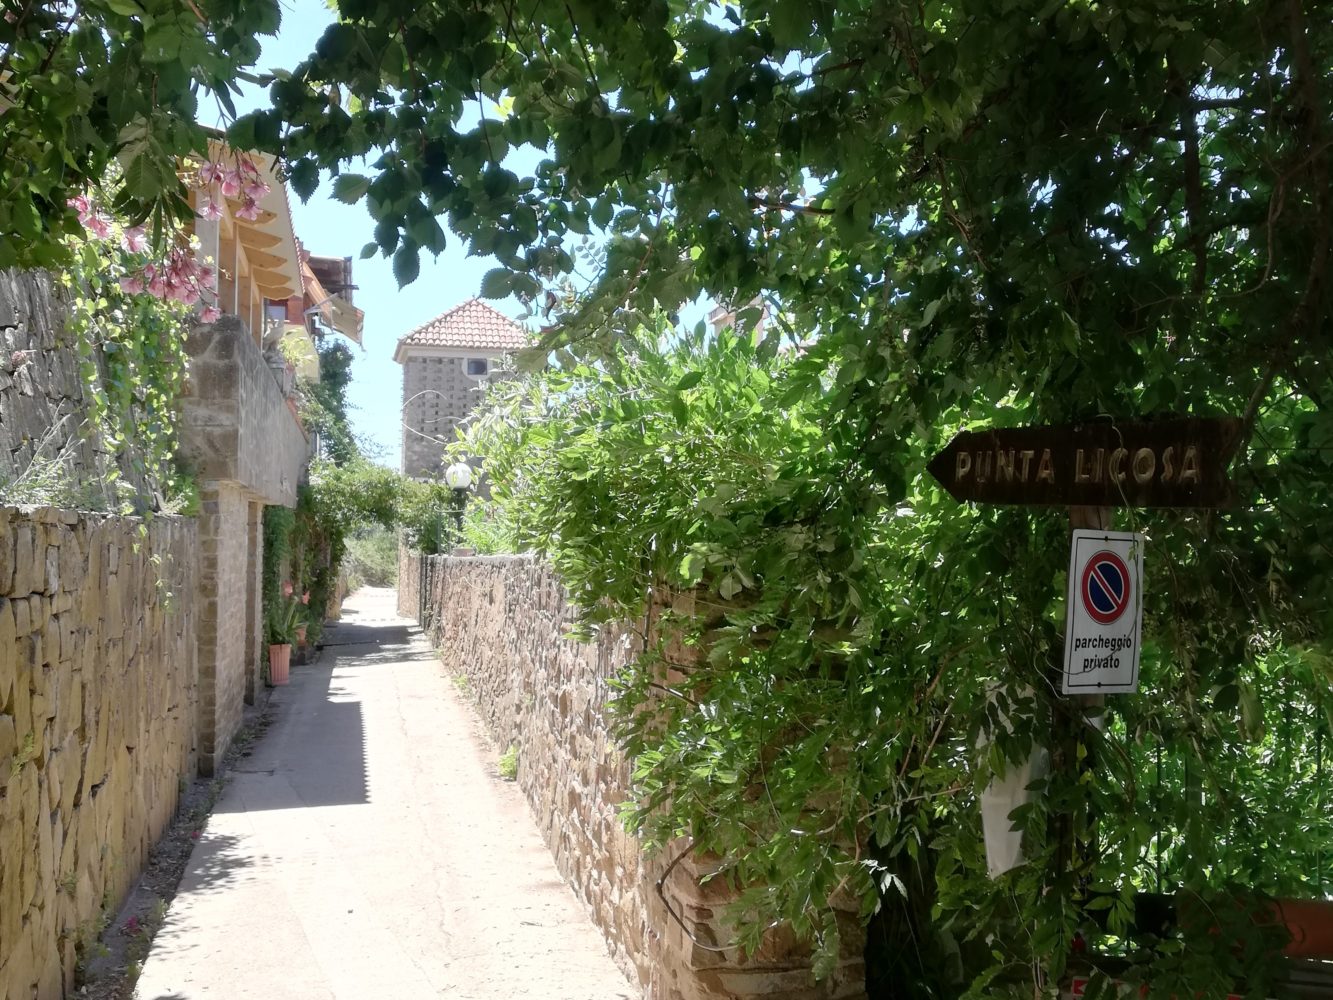 Sentiero per punta licosa, da San Marco di Castellabate alla sirena Leucosia.jpg